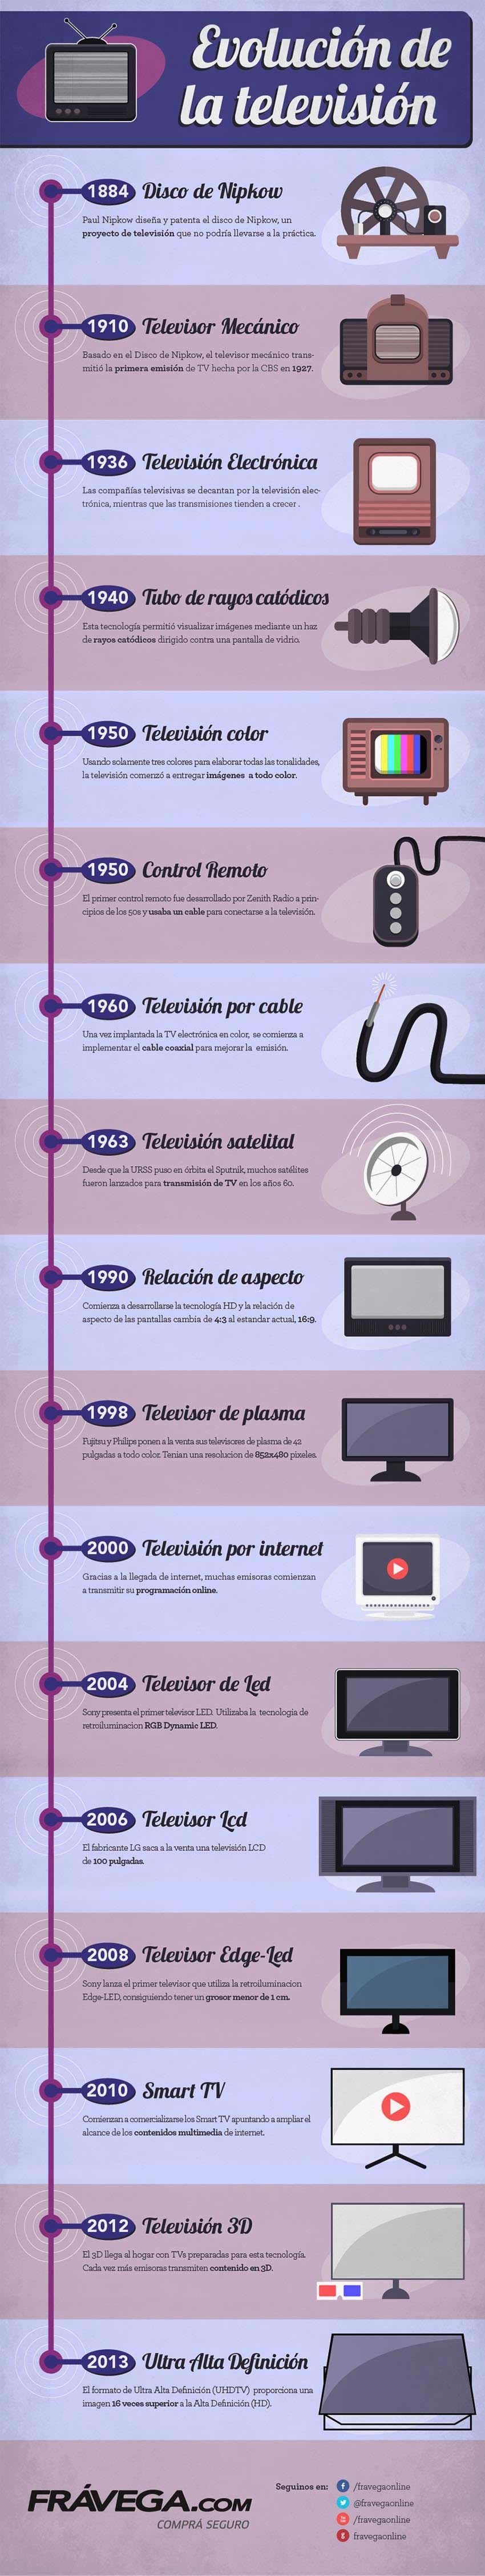 Historia de la Televisión